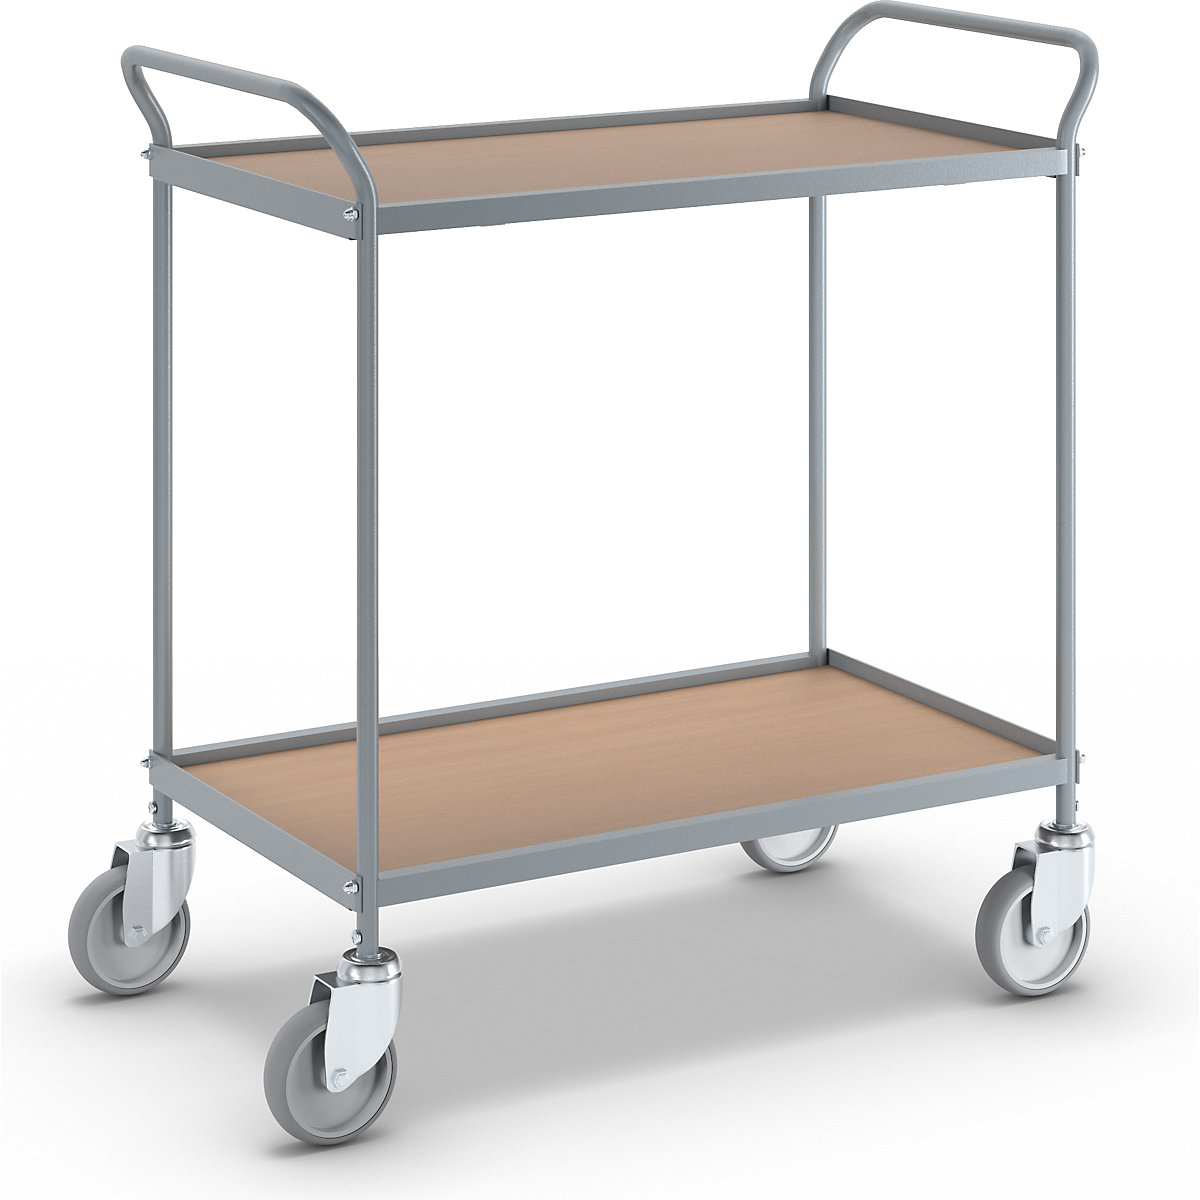 Serving trolley – eurokraft pro, shelf height 590 mm, 2 shelves, with 4 swivel castors, wheel Ø 125 mm-8